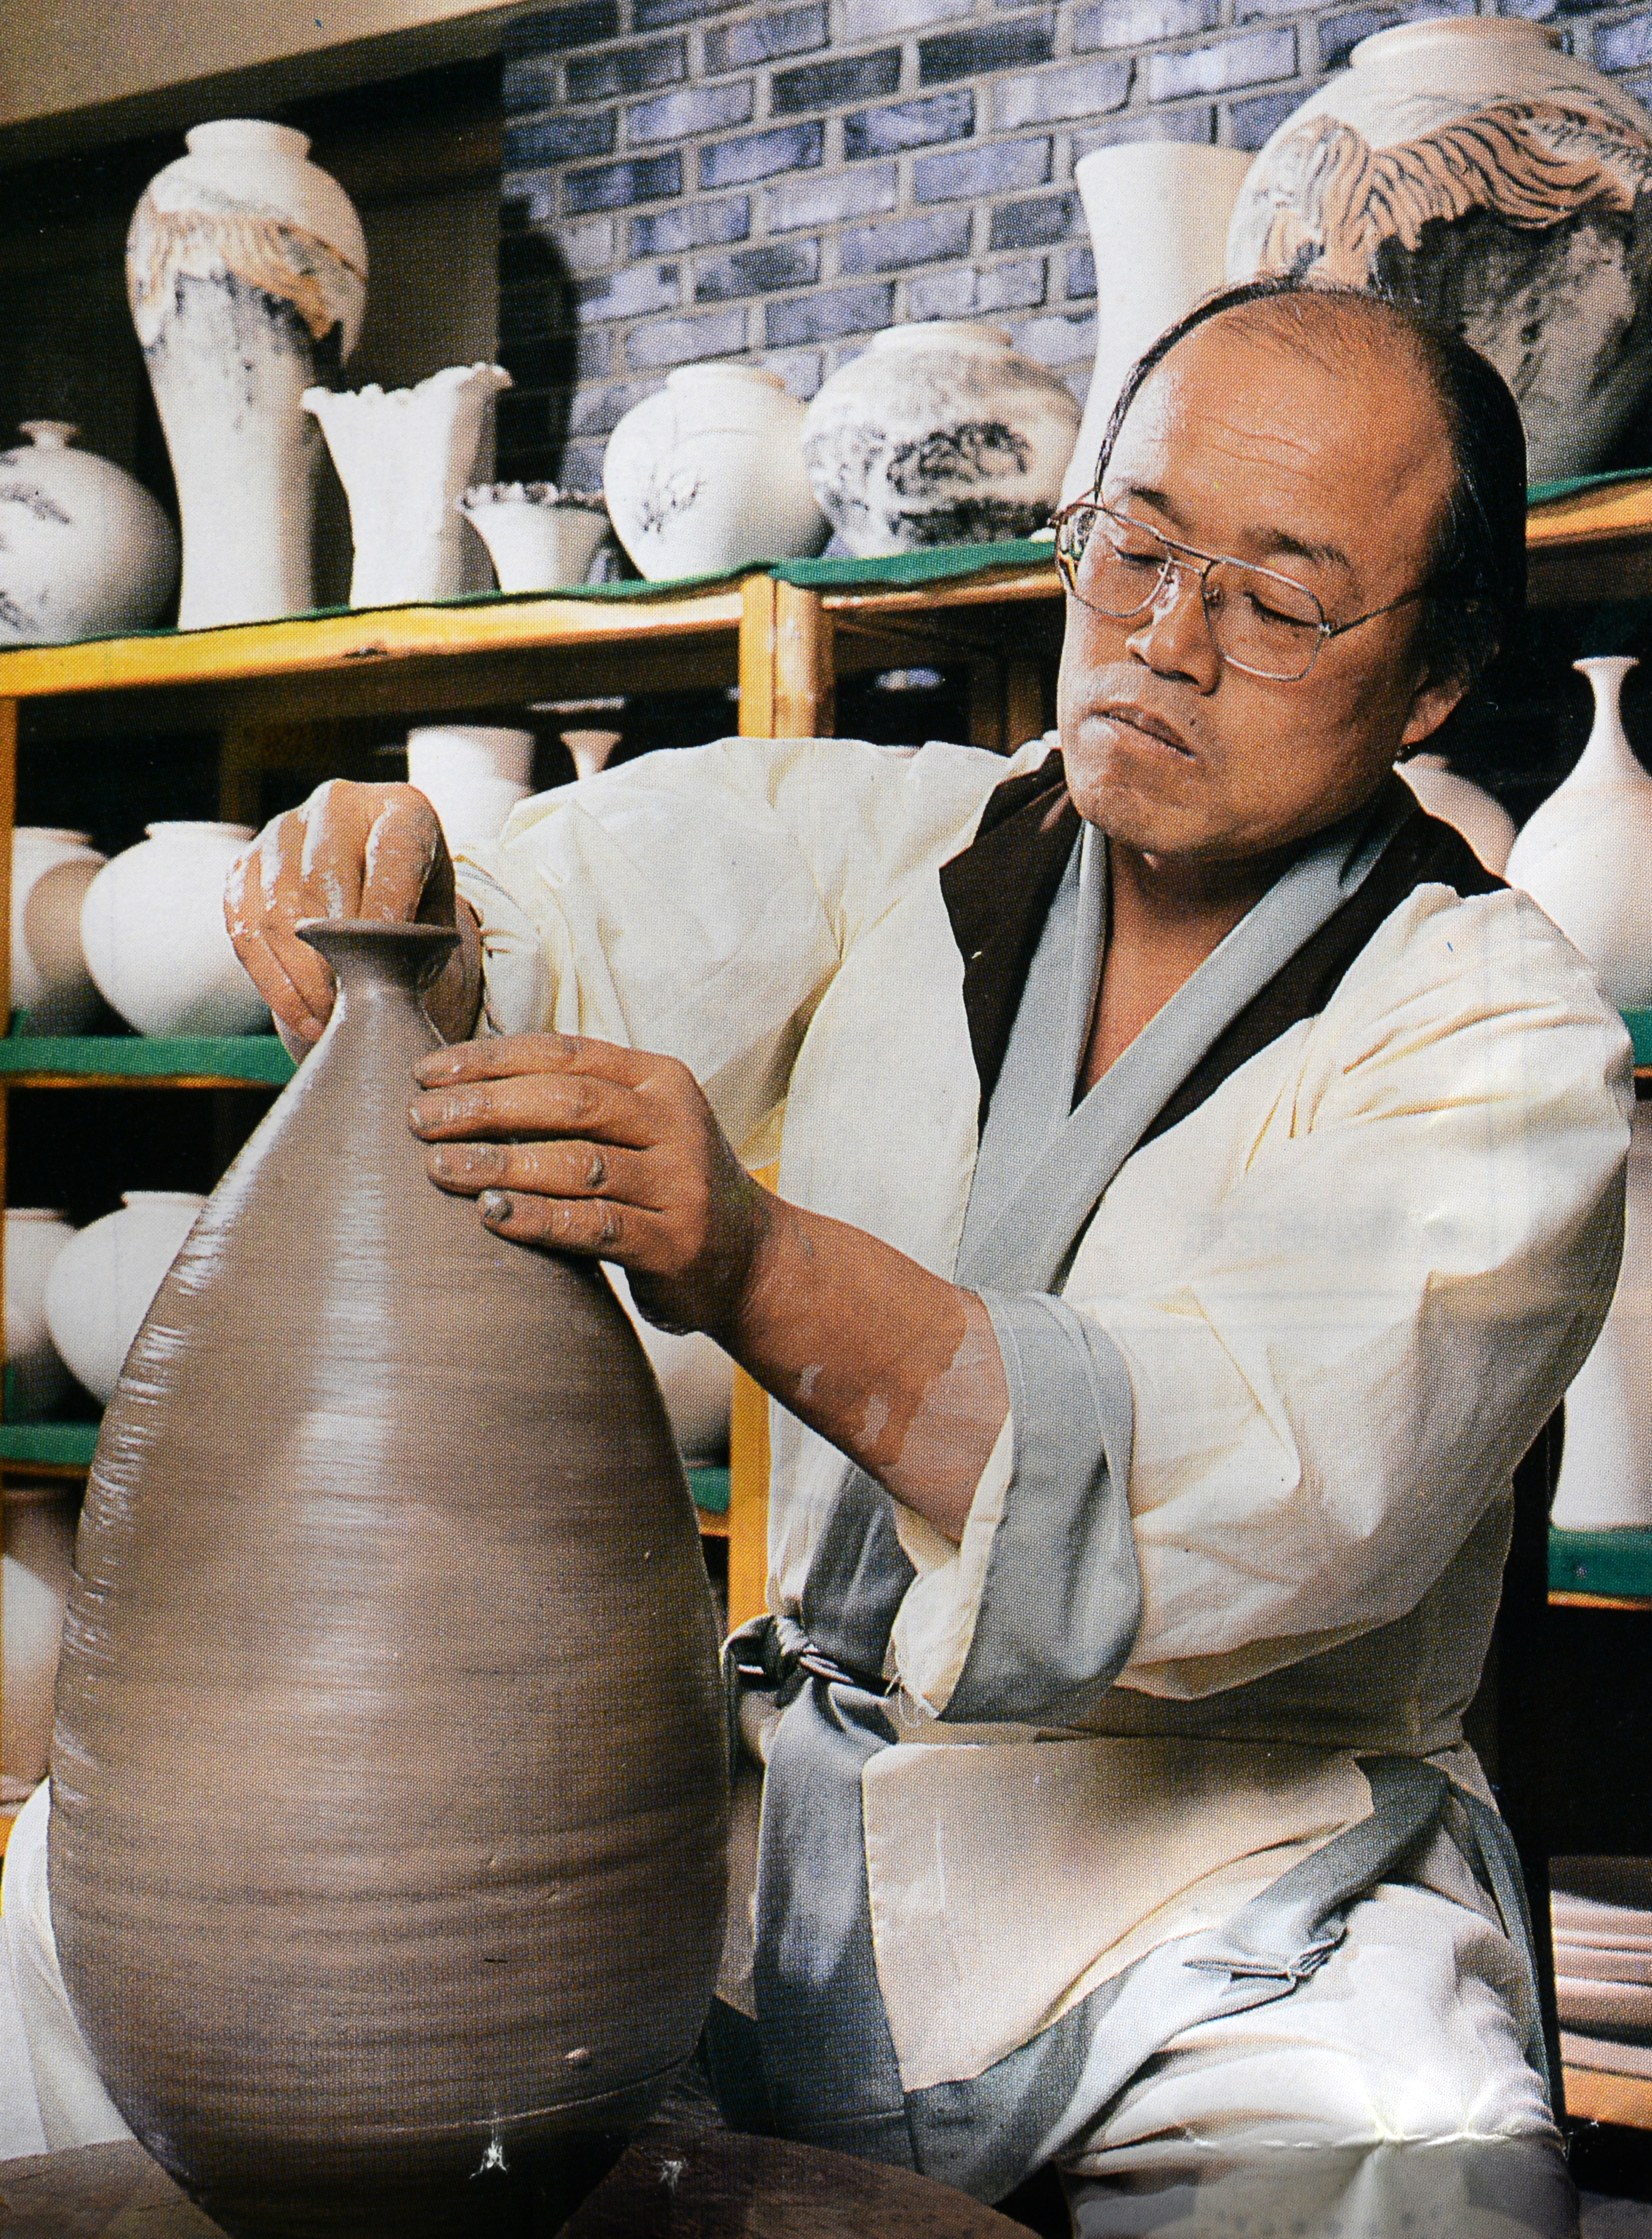 Koreai celadon szertartás váza